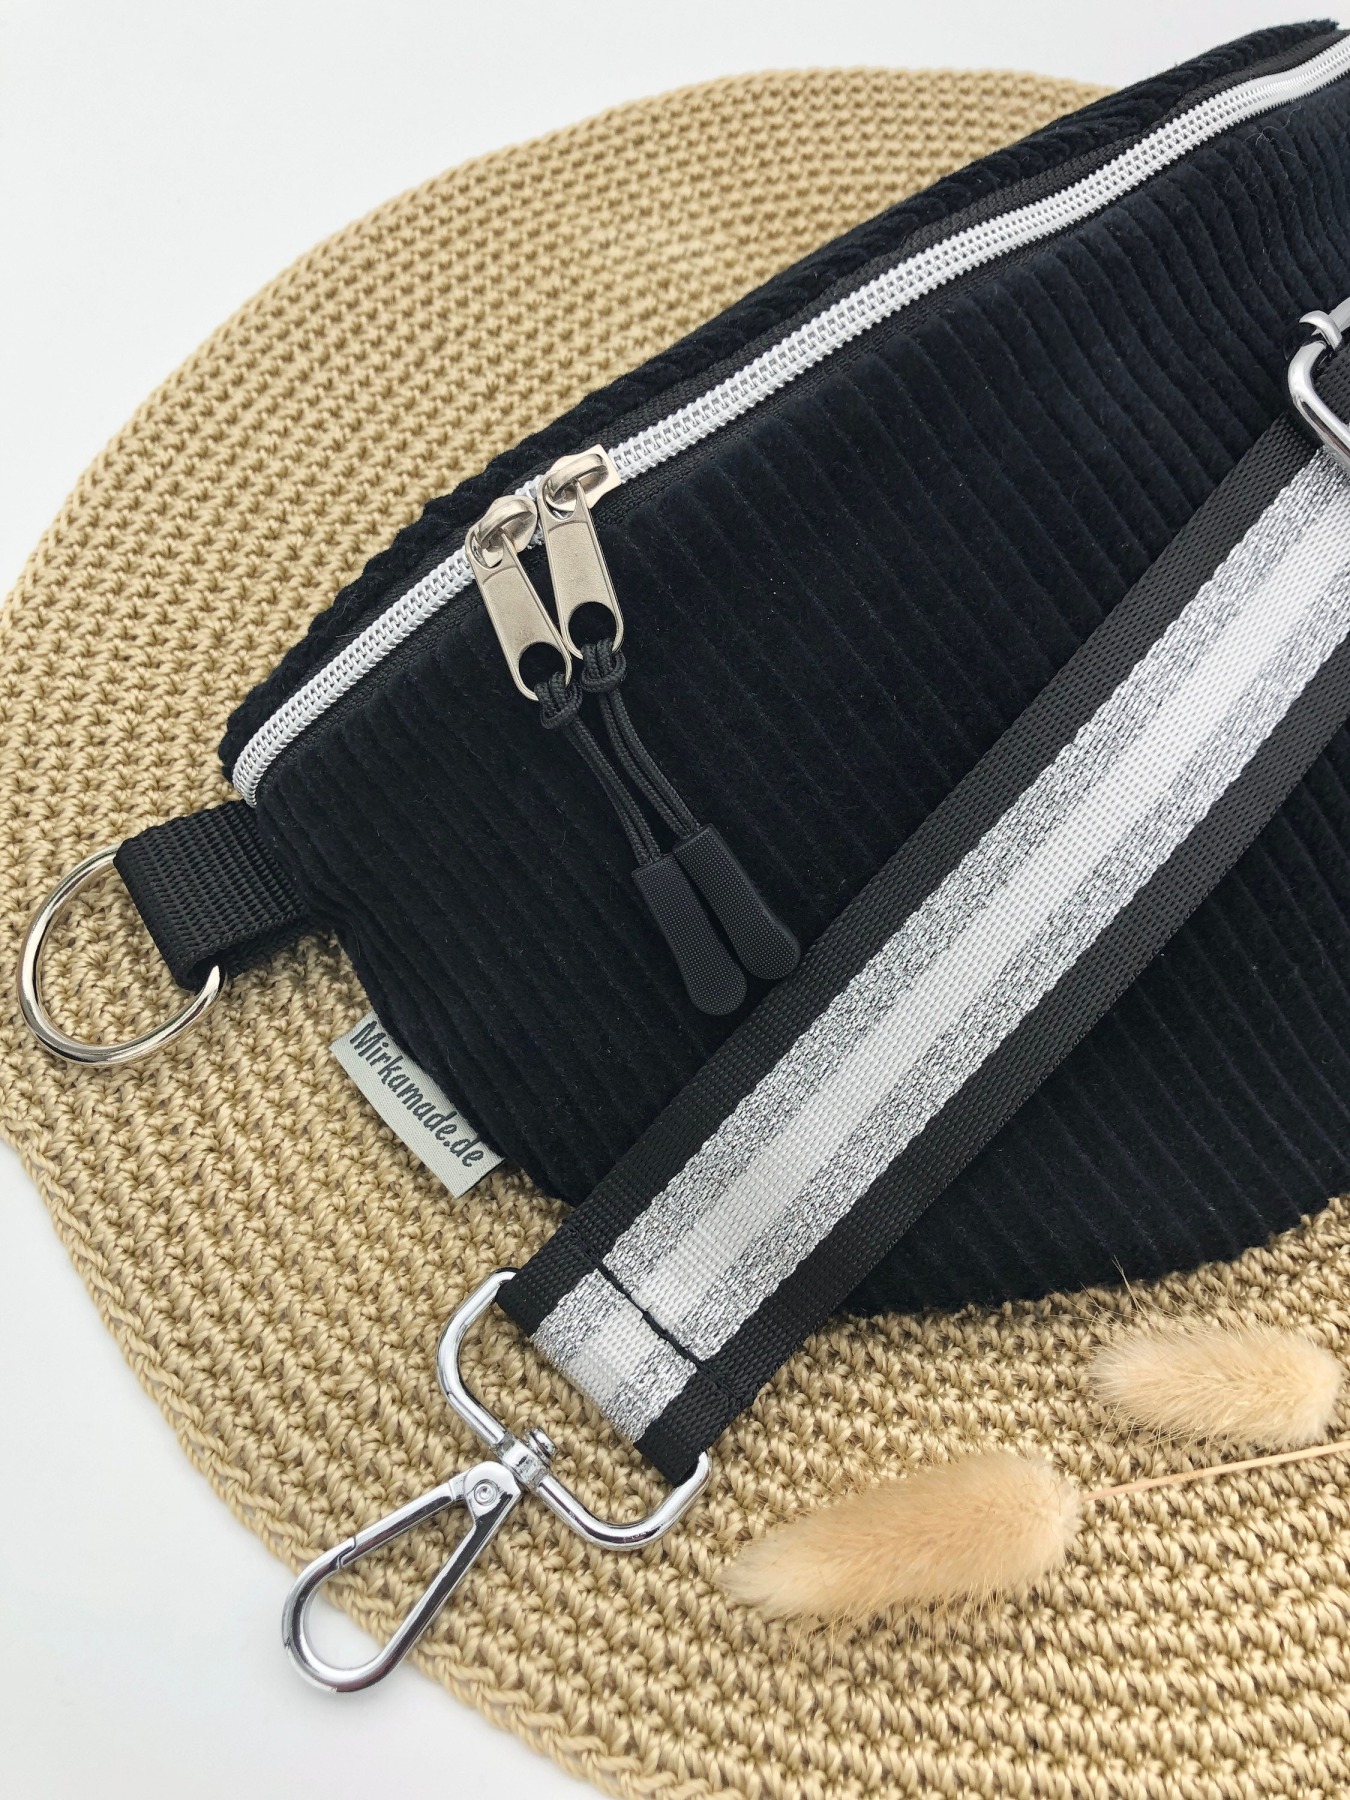 Bauchtasche Crossbag Cord schwarz mit Taschengurt gestreift schwarz/weiß/silber Hipbag leicht und